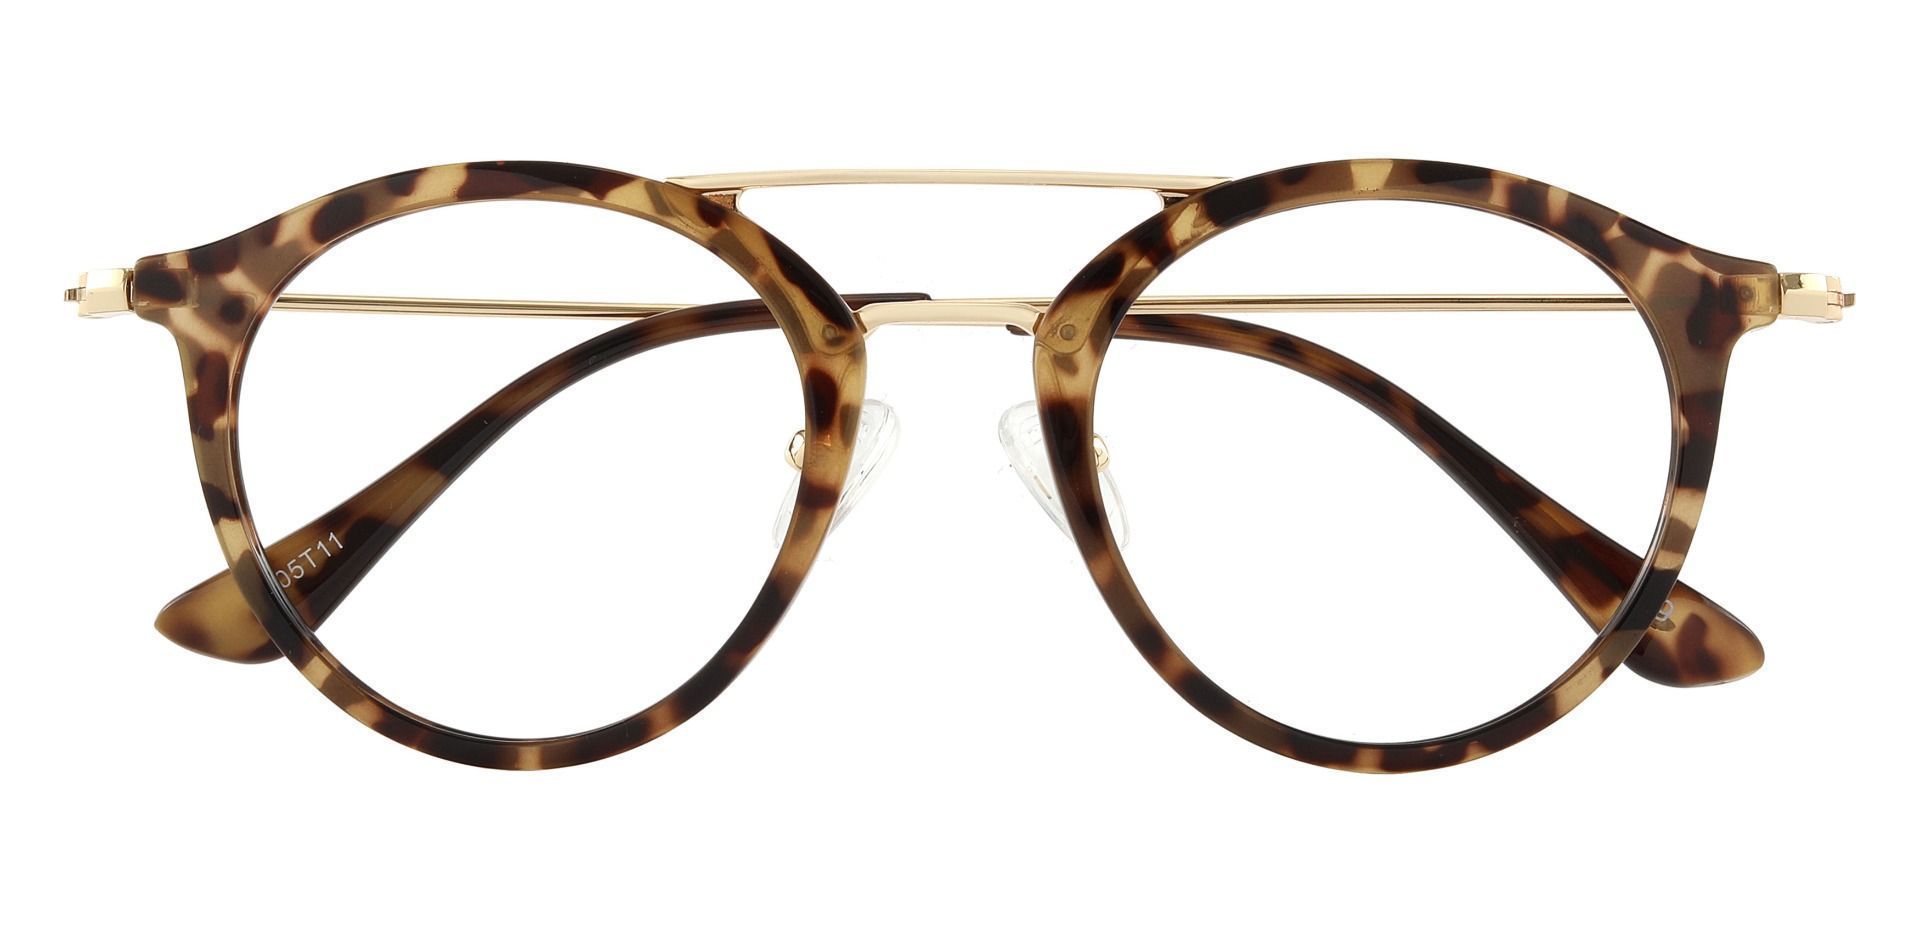 Malden Aviator Progressive Glasses - Tortoise